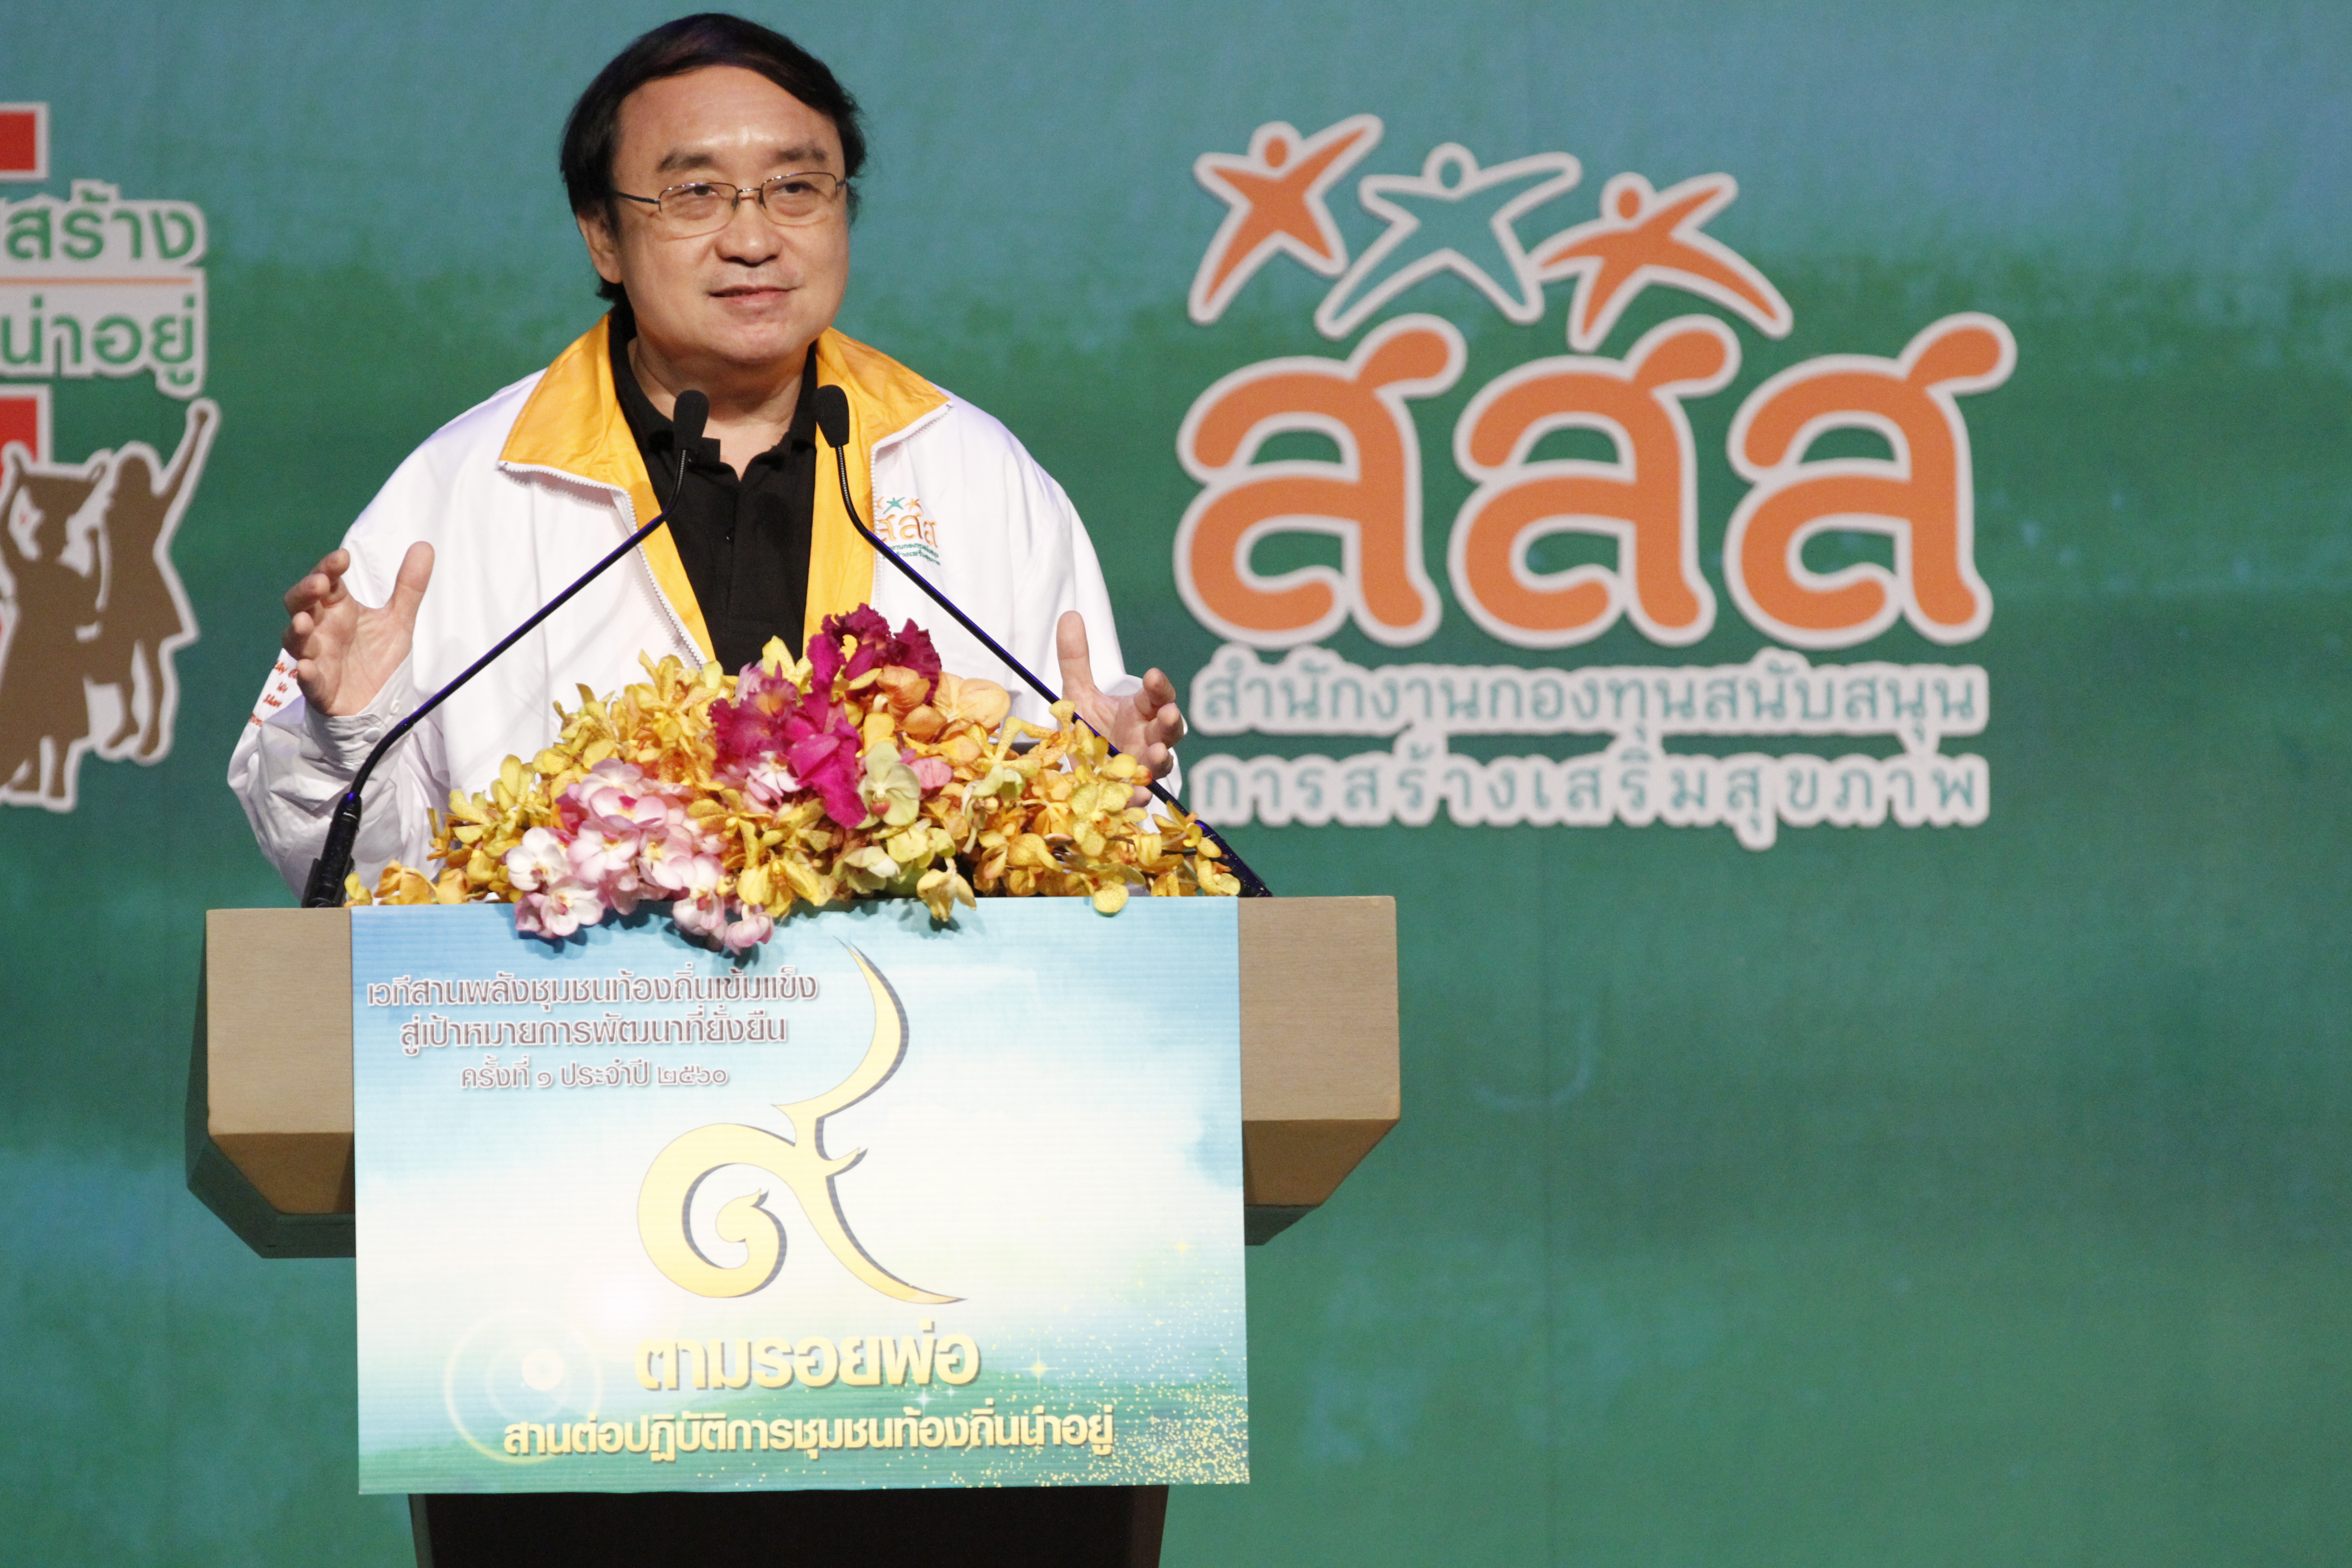 สสส.ผนึกภาคีฯ ประกาศปฏิญญา สู่การพัฒนาที่ยั่งยืน thaihealth